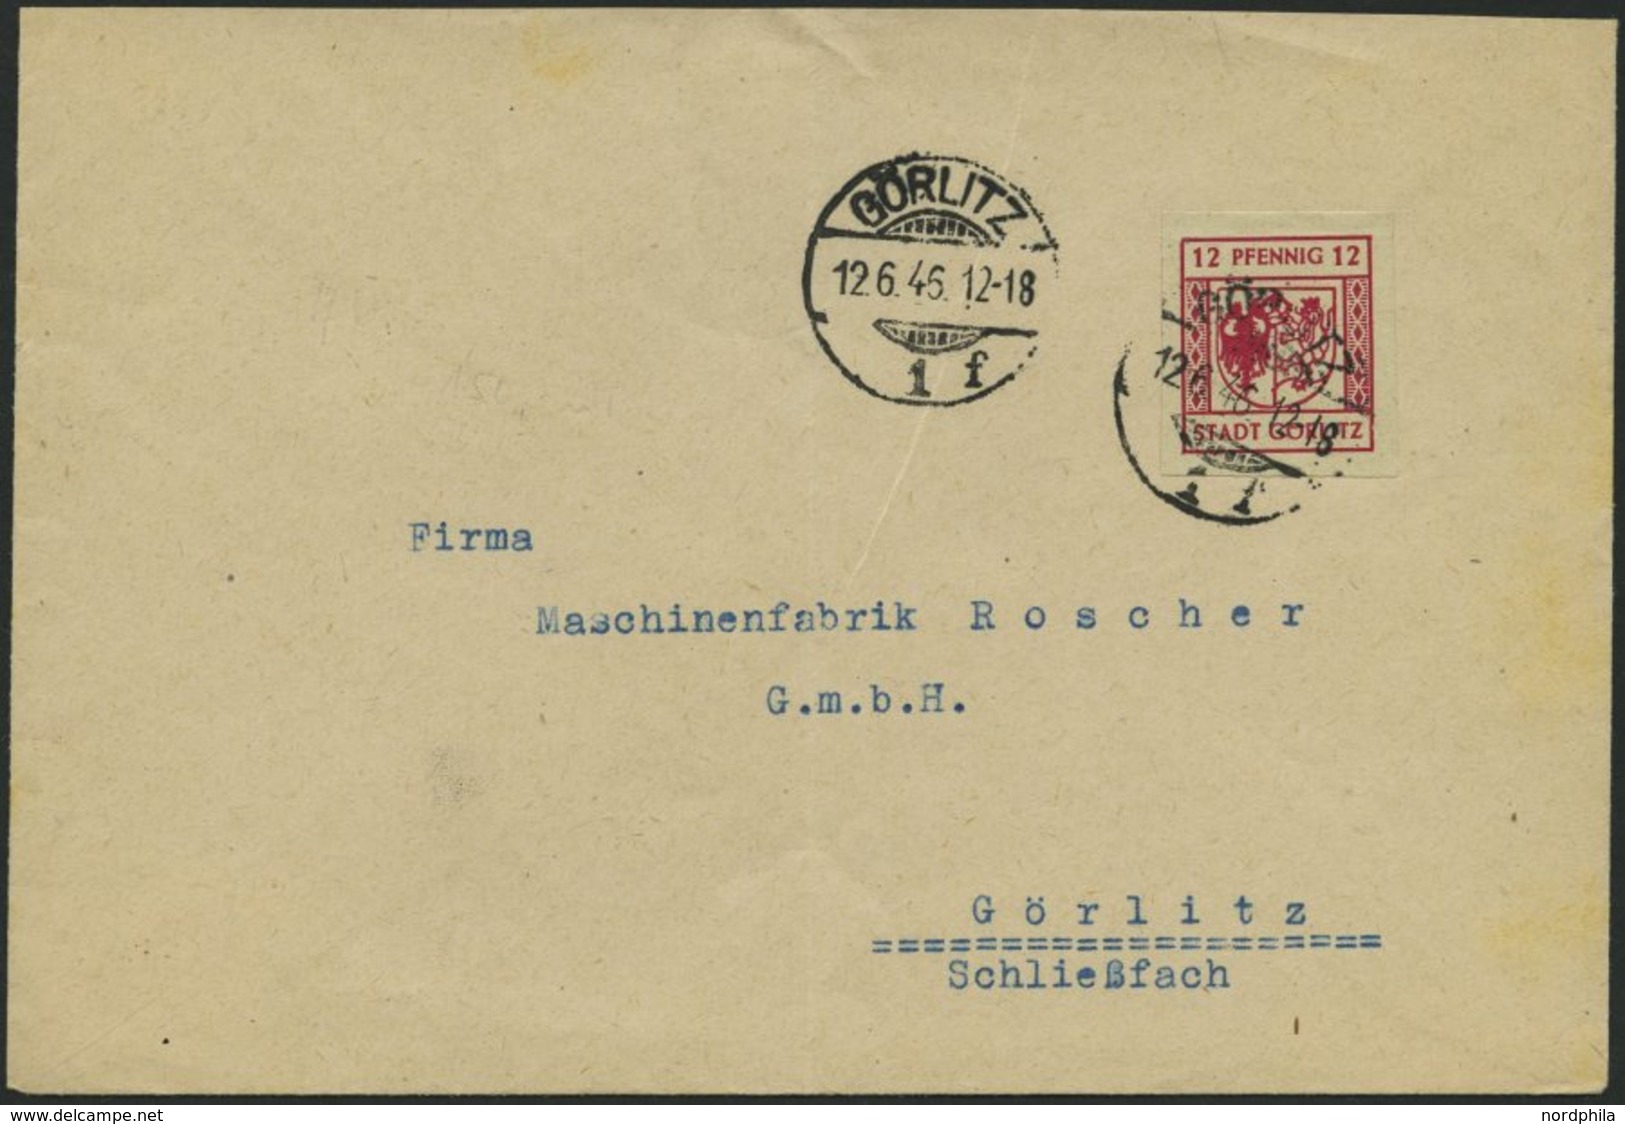 GÖRLITZ 4aU BRIEF, 1946, 12 Pf. Lilarot, Graues Papier, Ungezähnt, Prachtbrief - Private & Local Mails